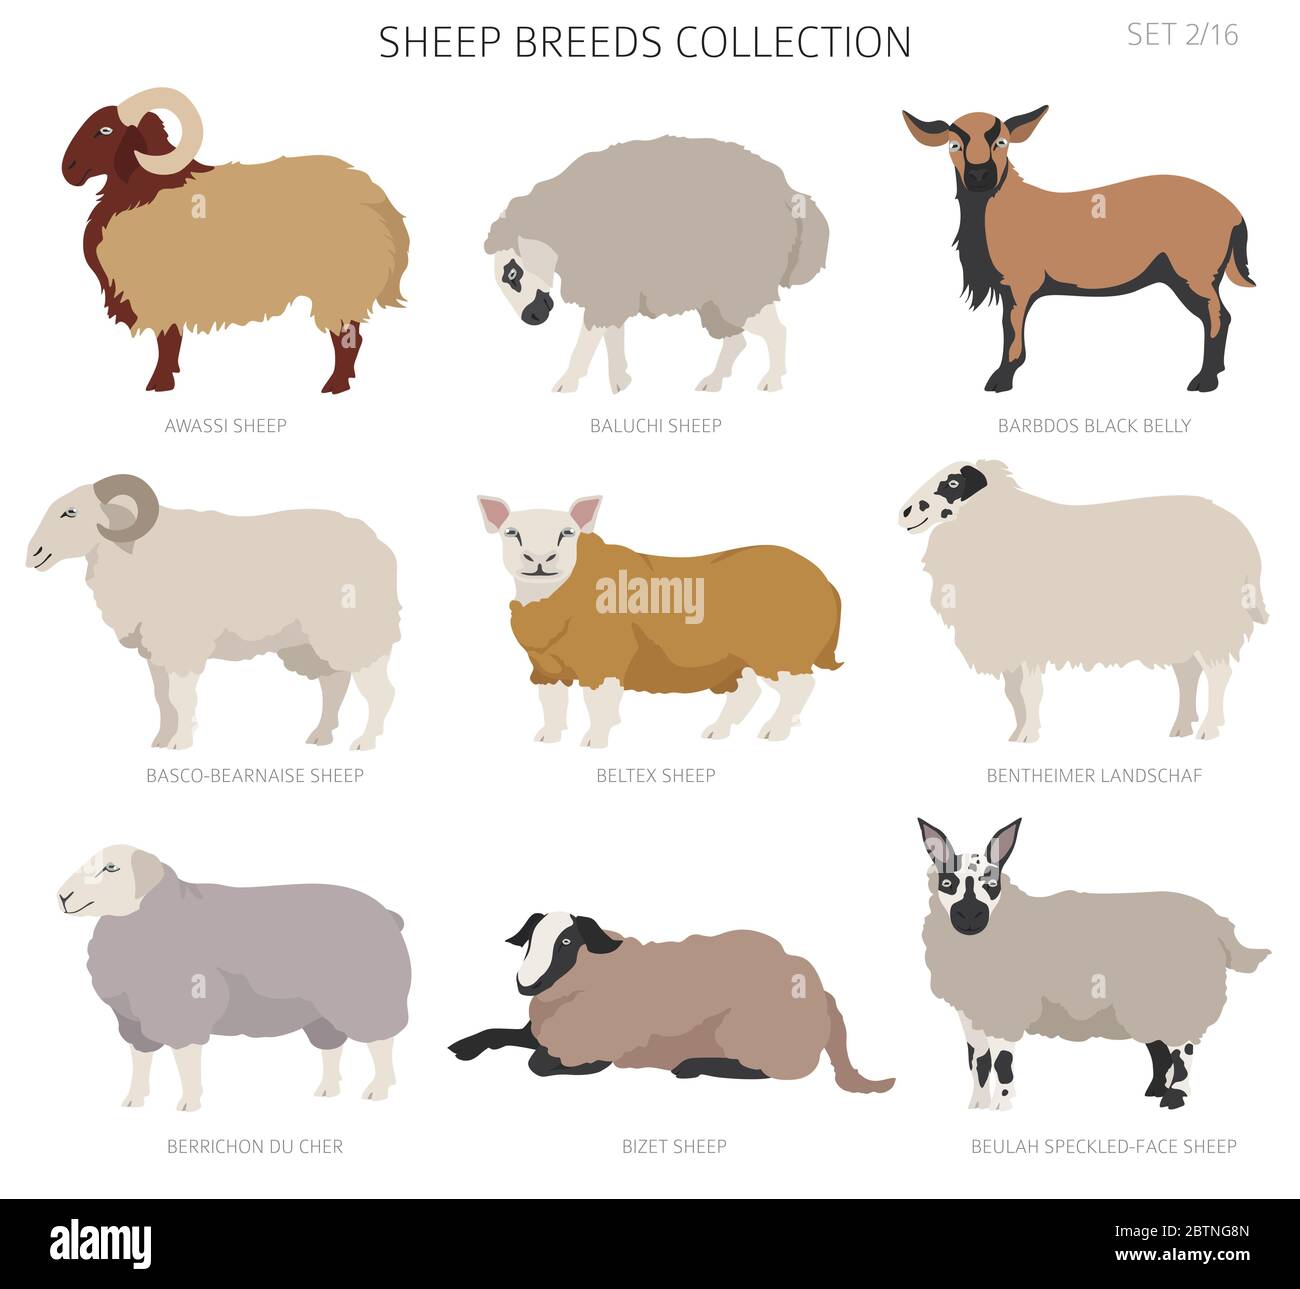 Collection de races de moutons 2. Ensemble animaux de ferme. Conception plate. Illustration vectorielle Illustration de Vecteur